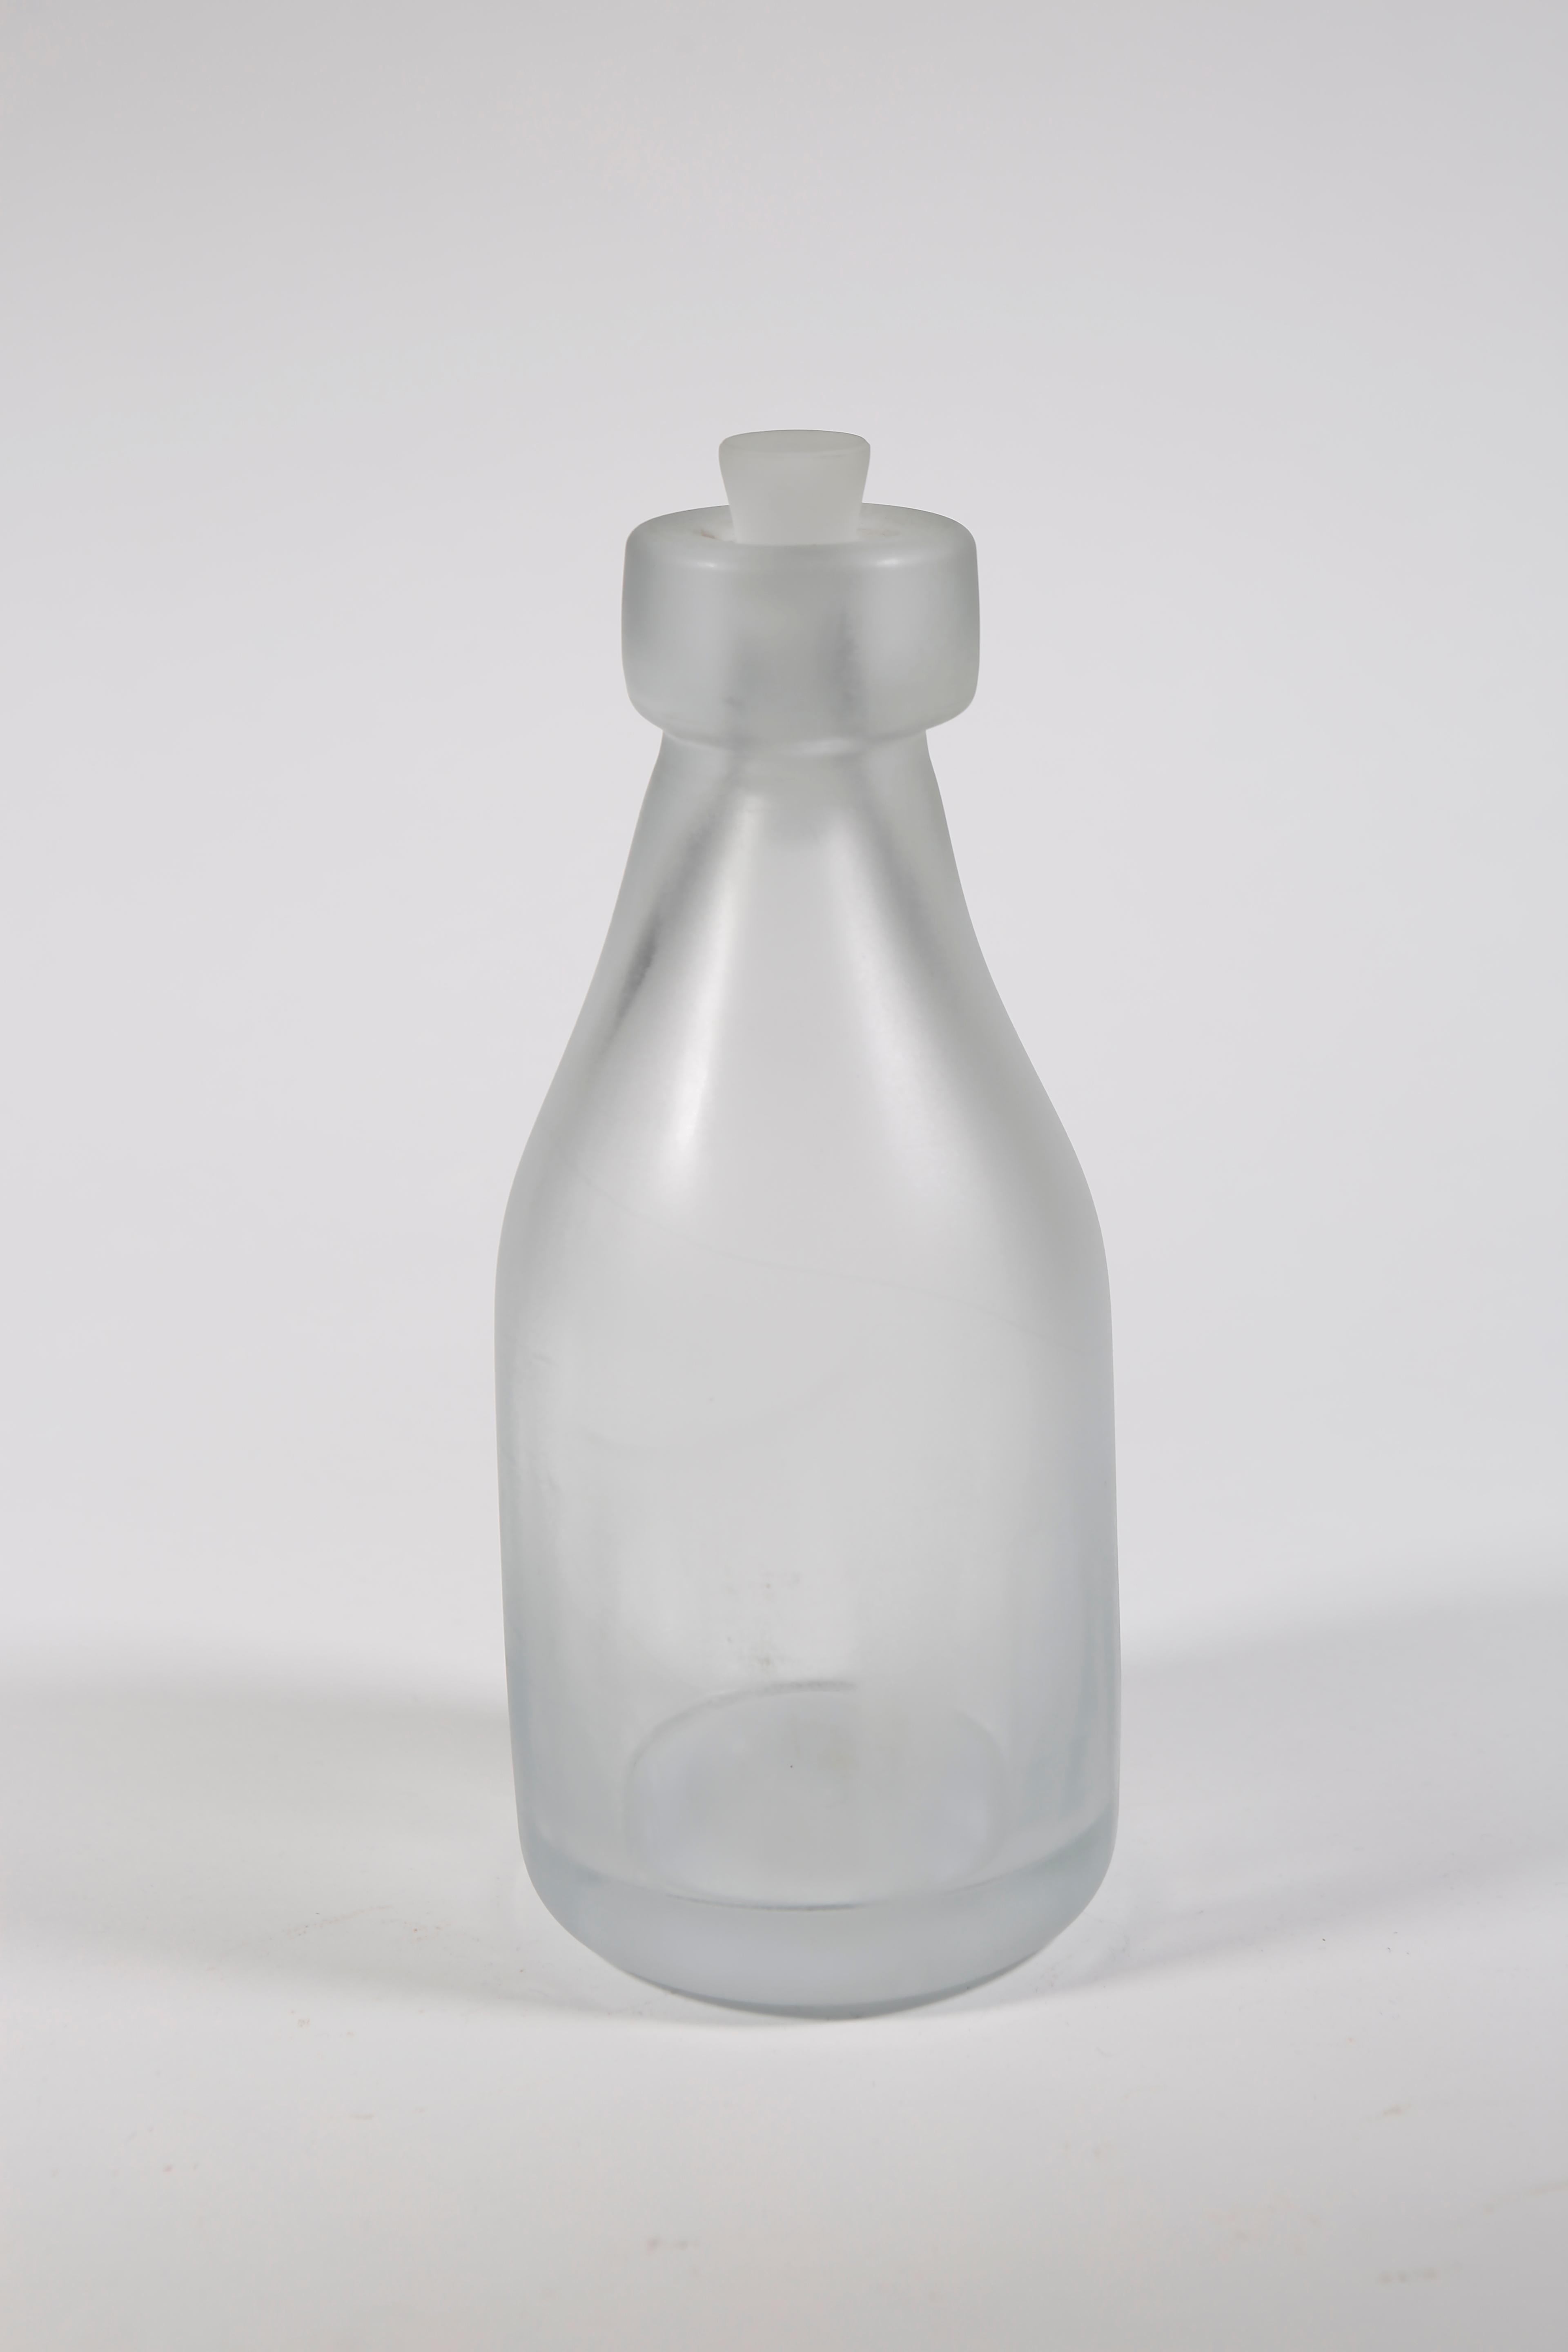 Whole Nother Melk Bottles/Vases: Etched Blown Glass, Chicago, Jordan Mozer, 2013 For Sale 8